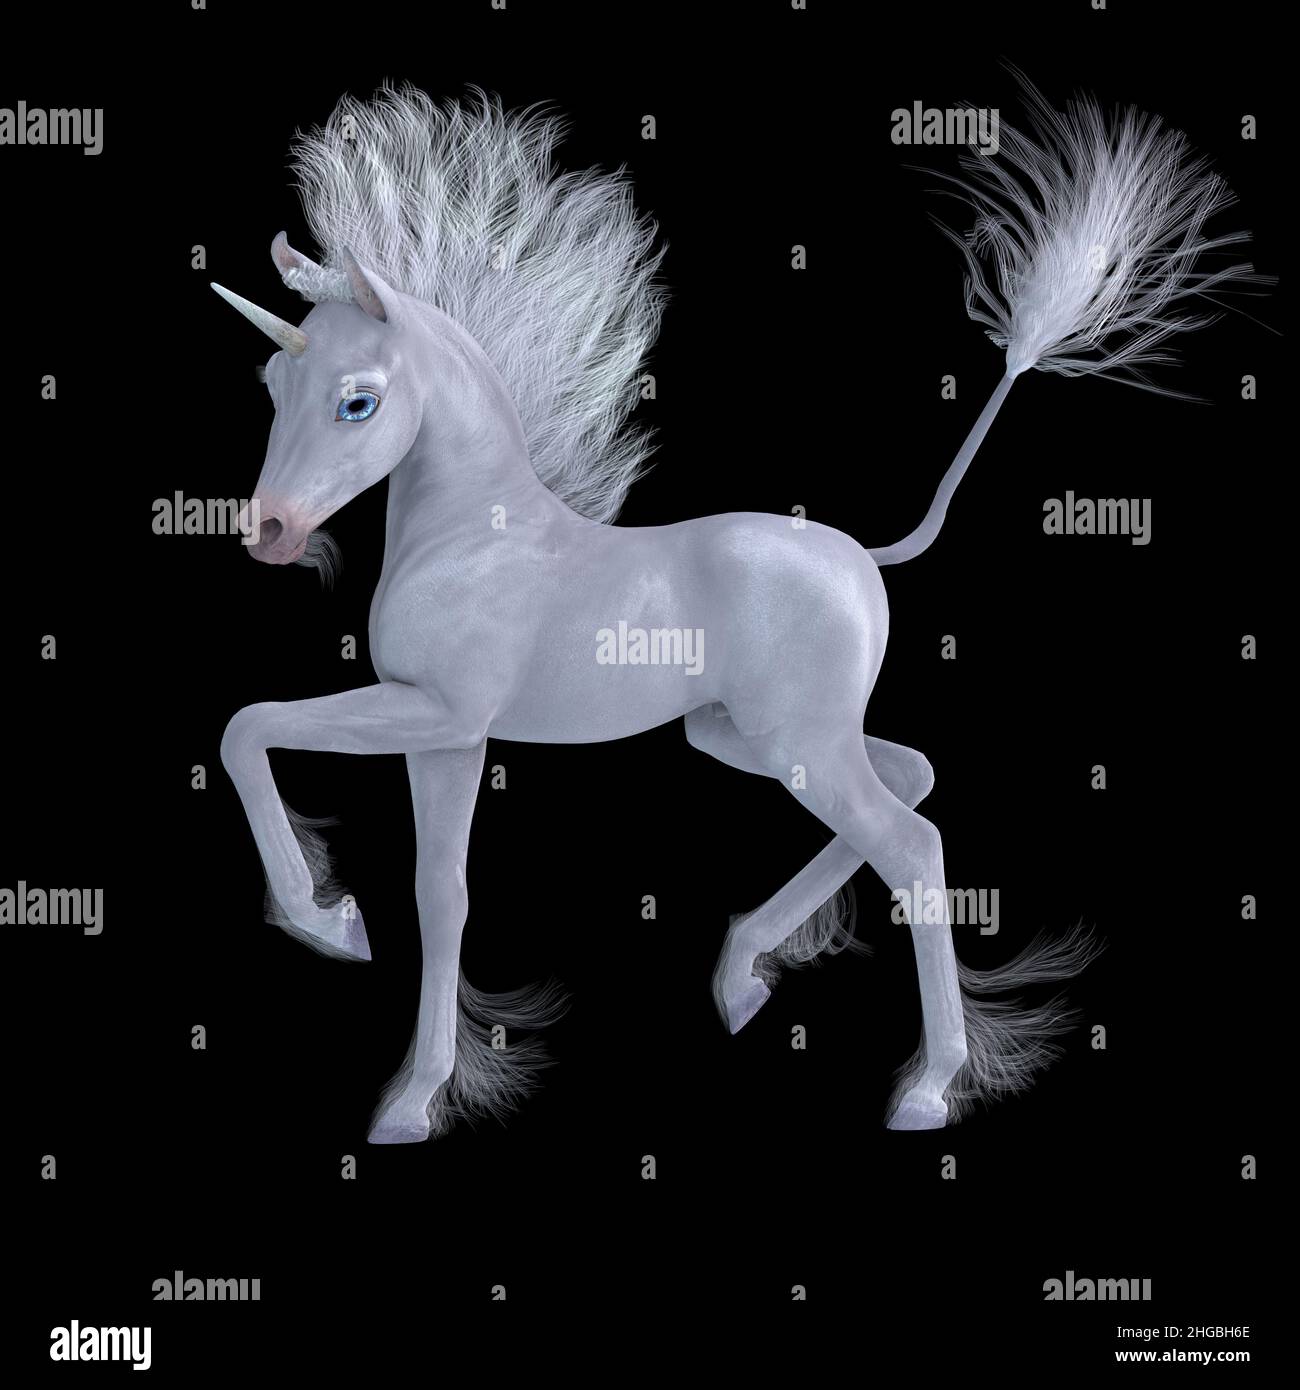 Un pequeño unicornio blanco famoso como una criatura legendaria con habilidades mágicas. Foto de stock